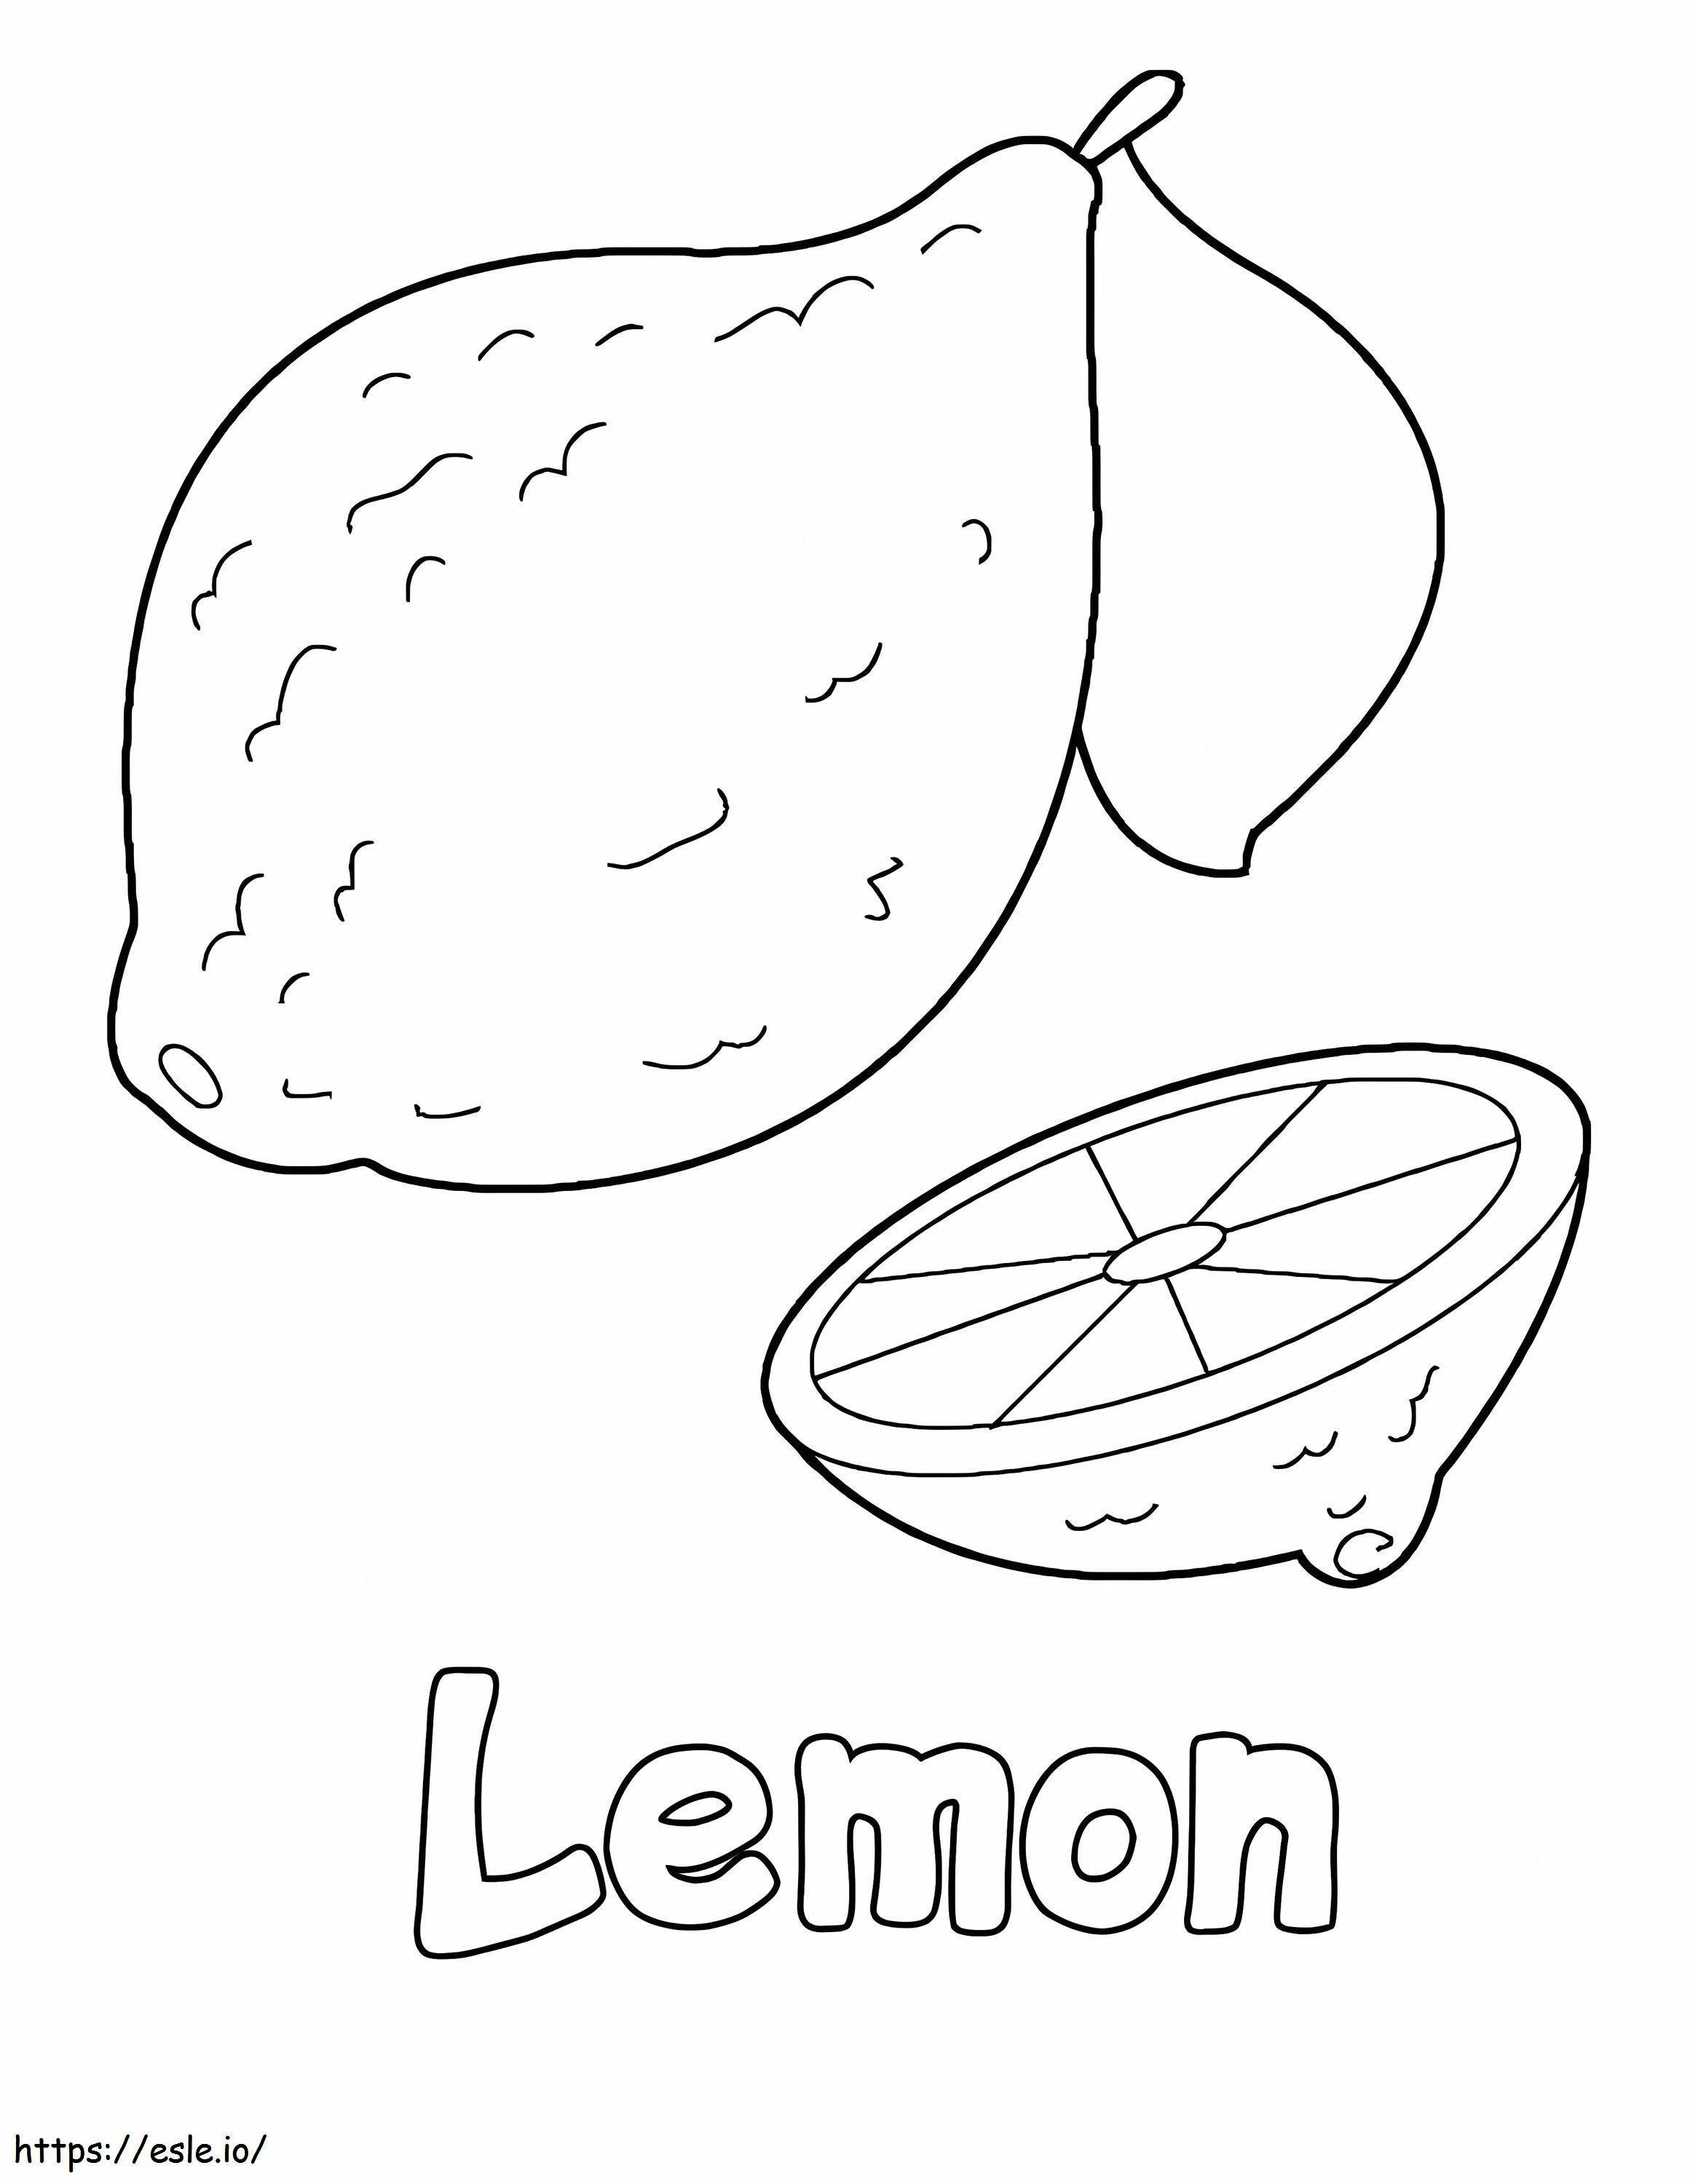 Limão Básico e Meio Limão para colorir